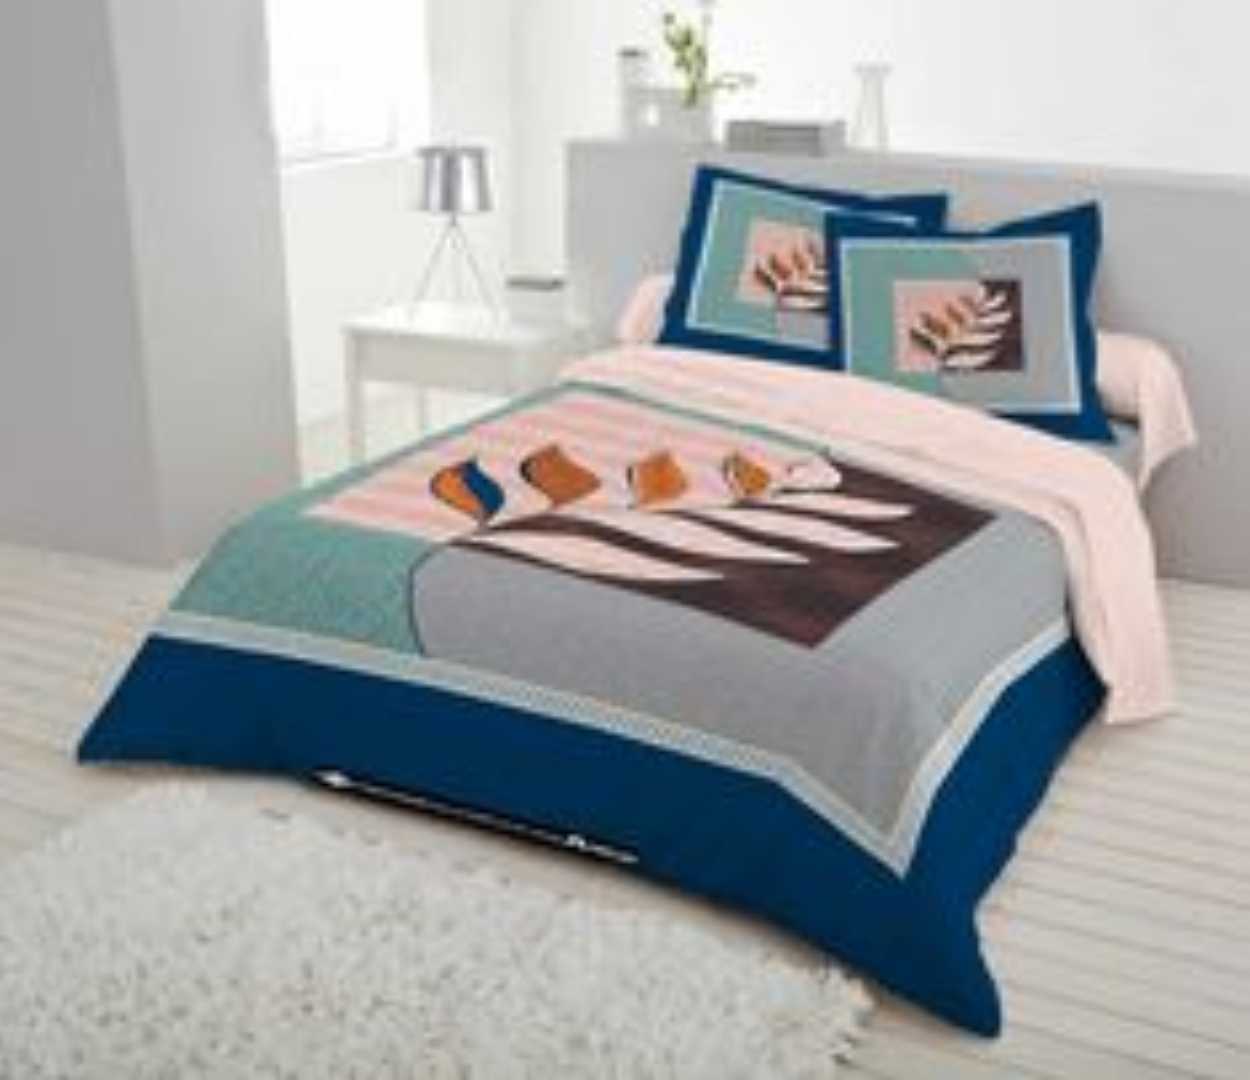 pure cotton bed sheet,cotton bed sheet,cotton bed sheets,bed sheet design,bed sheets design,bed sheet business,bed sheet,bed sheet wholesale market